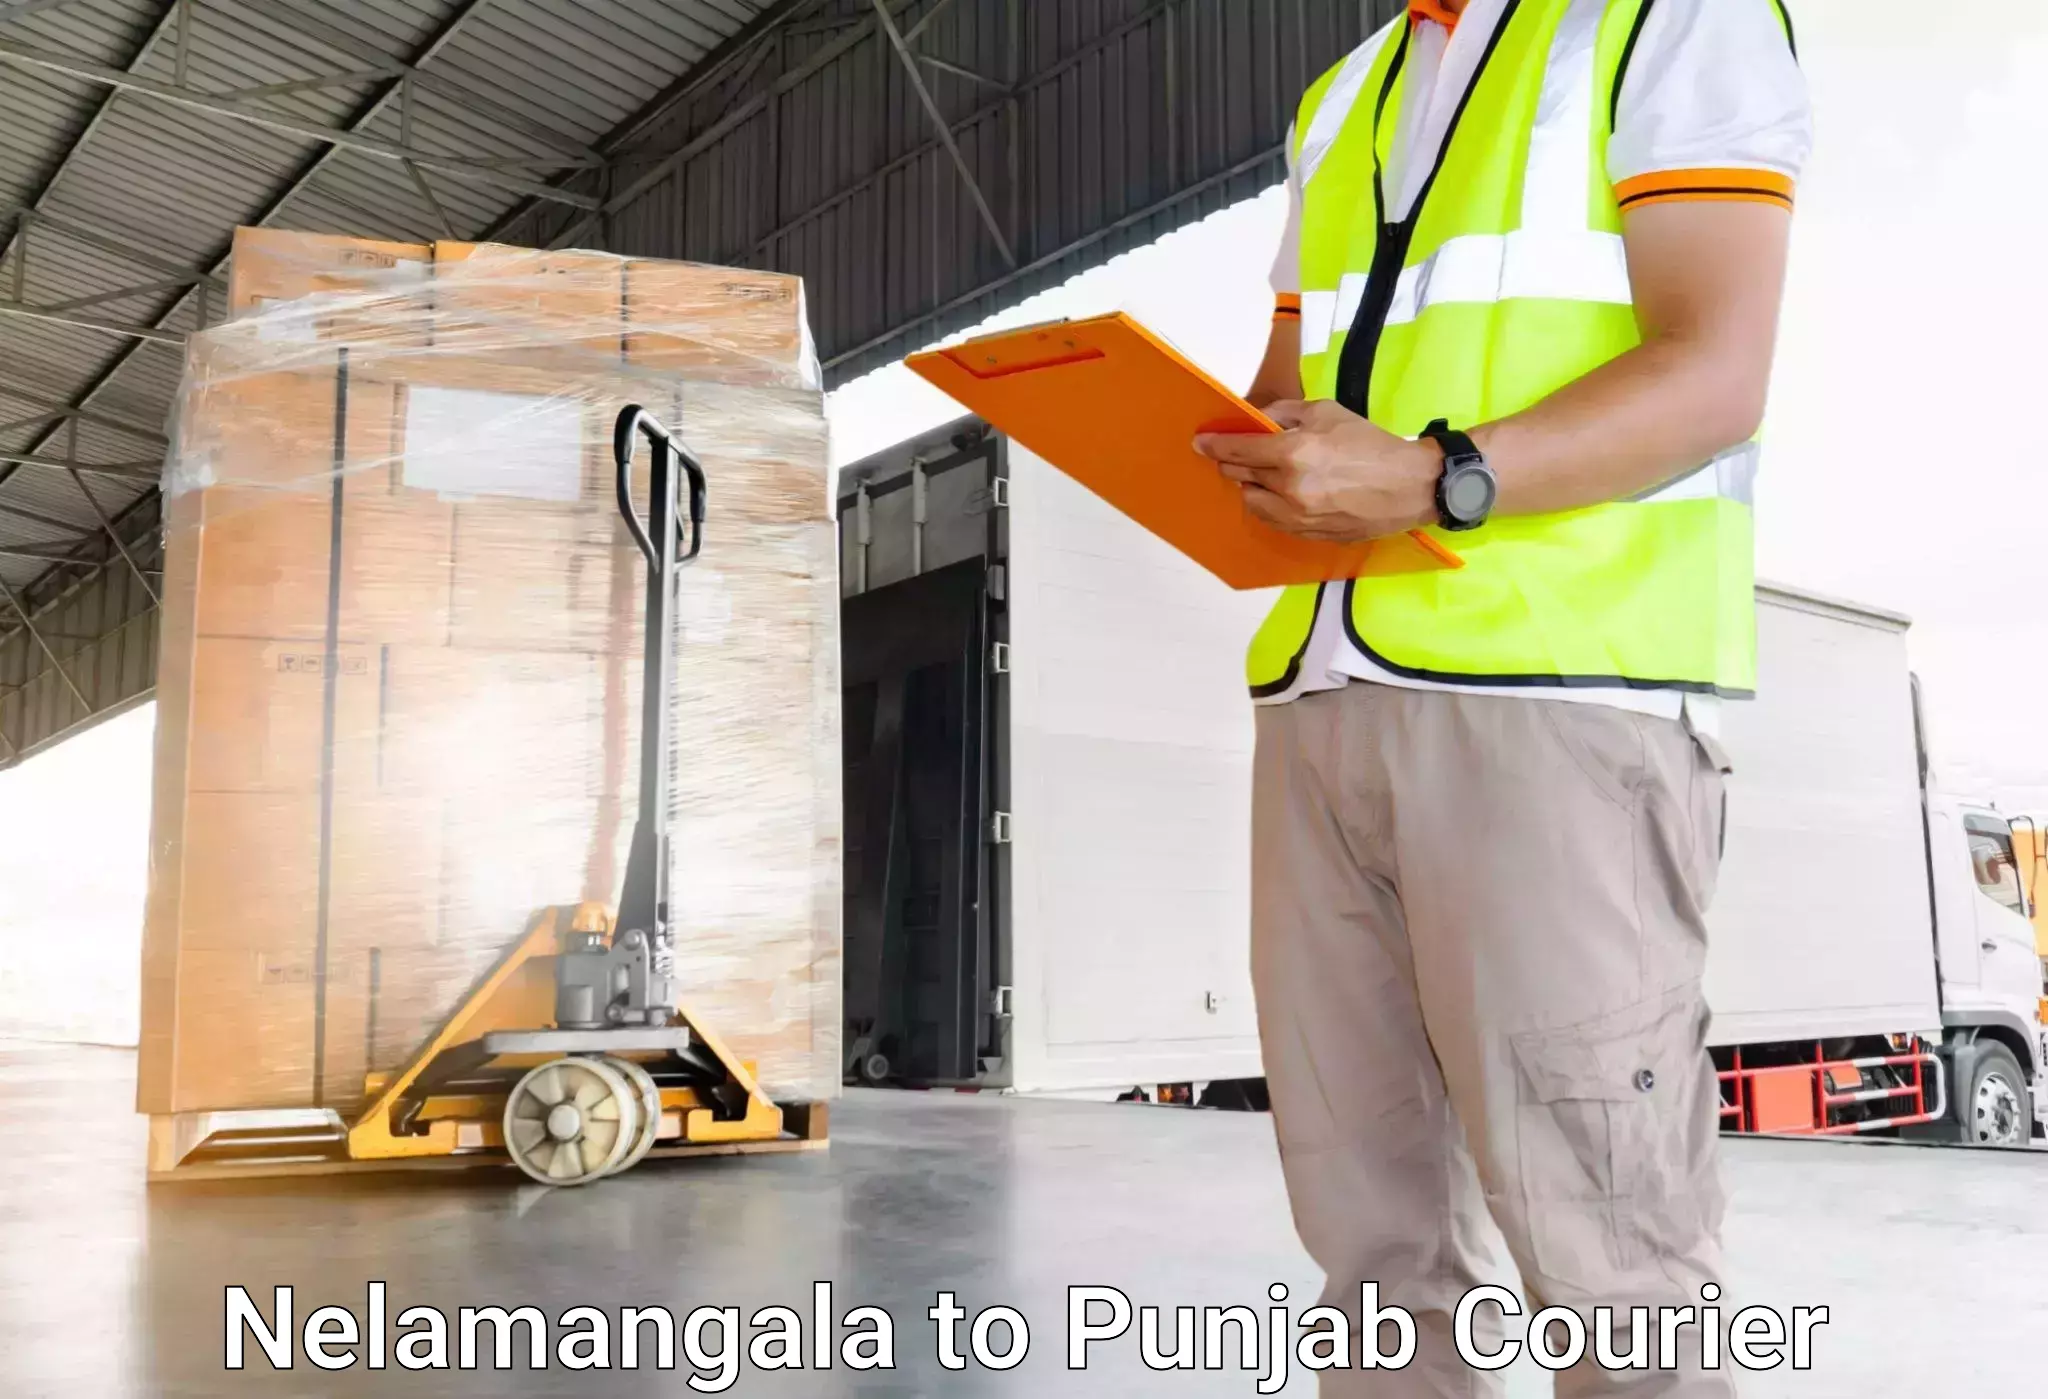 Reliable luggage courier Nelamangala to Punjab